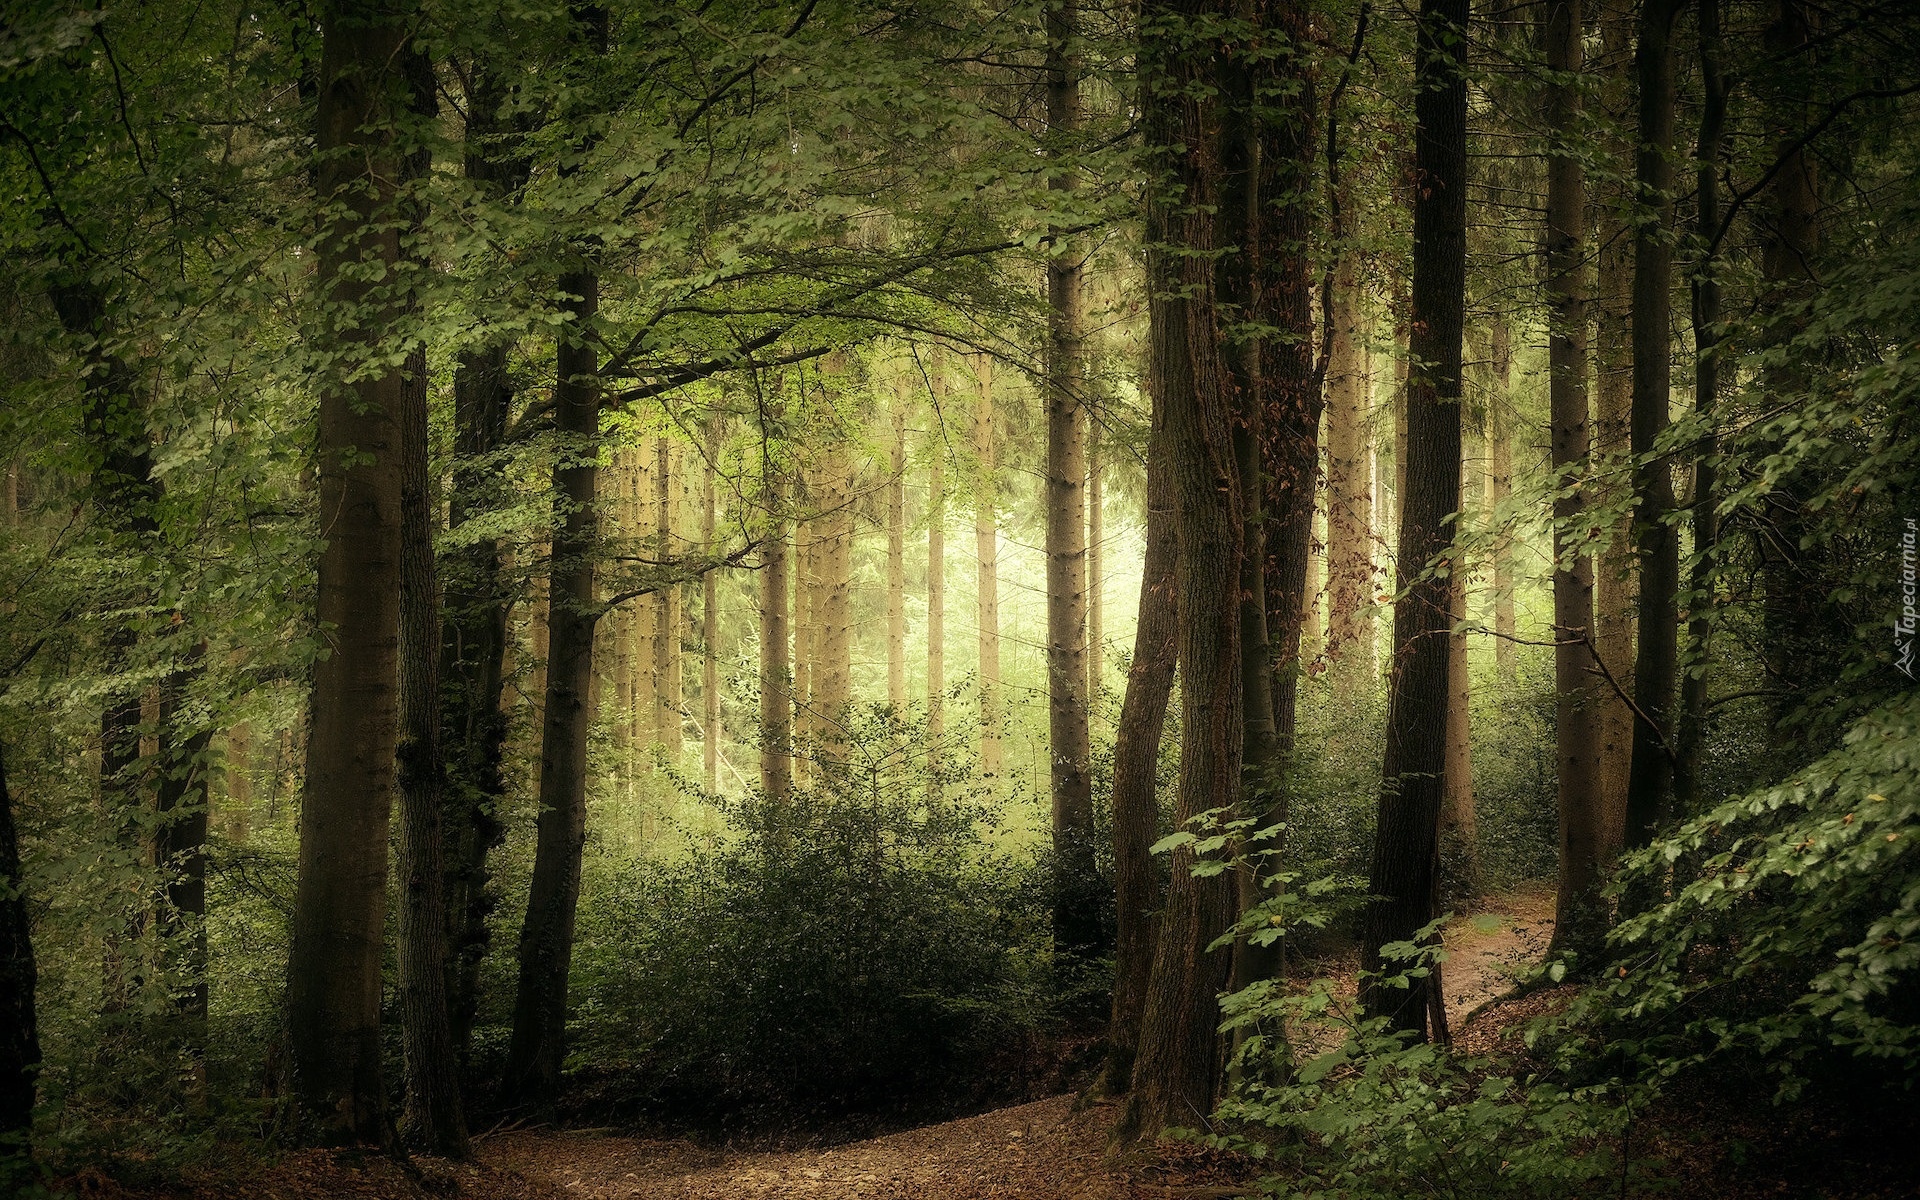 Zielony, Las, Drzewa, Ścieżka, Przebijające światło